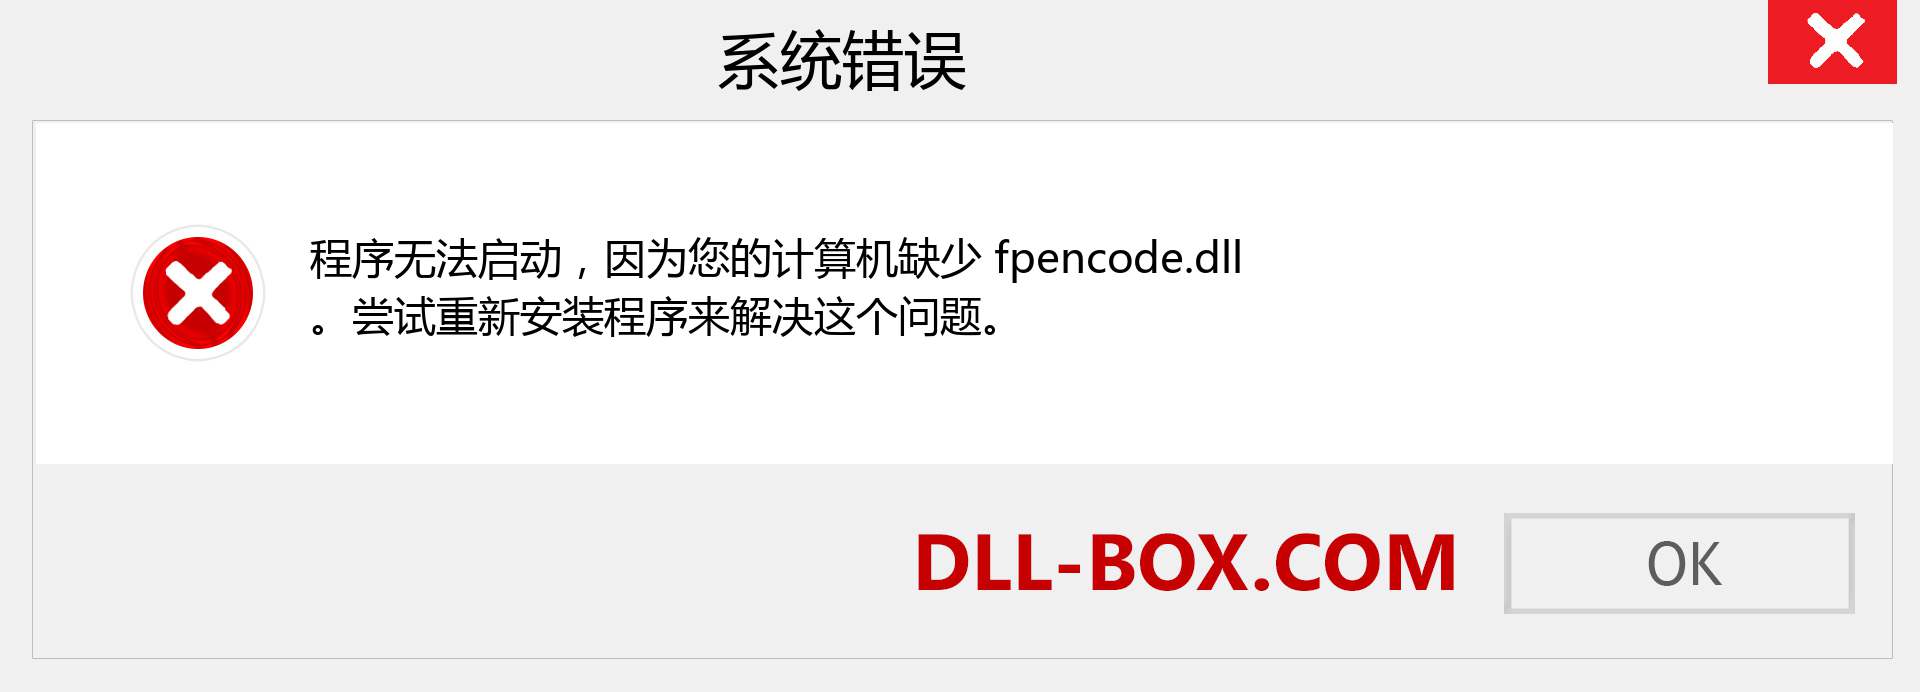 fpencode.dll 文件丢失？。 适用于 Windows 7、8、10 的下载 - 修复 Windows、照片、图像上的 fpencode dll 丢失错误